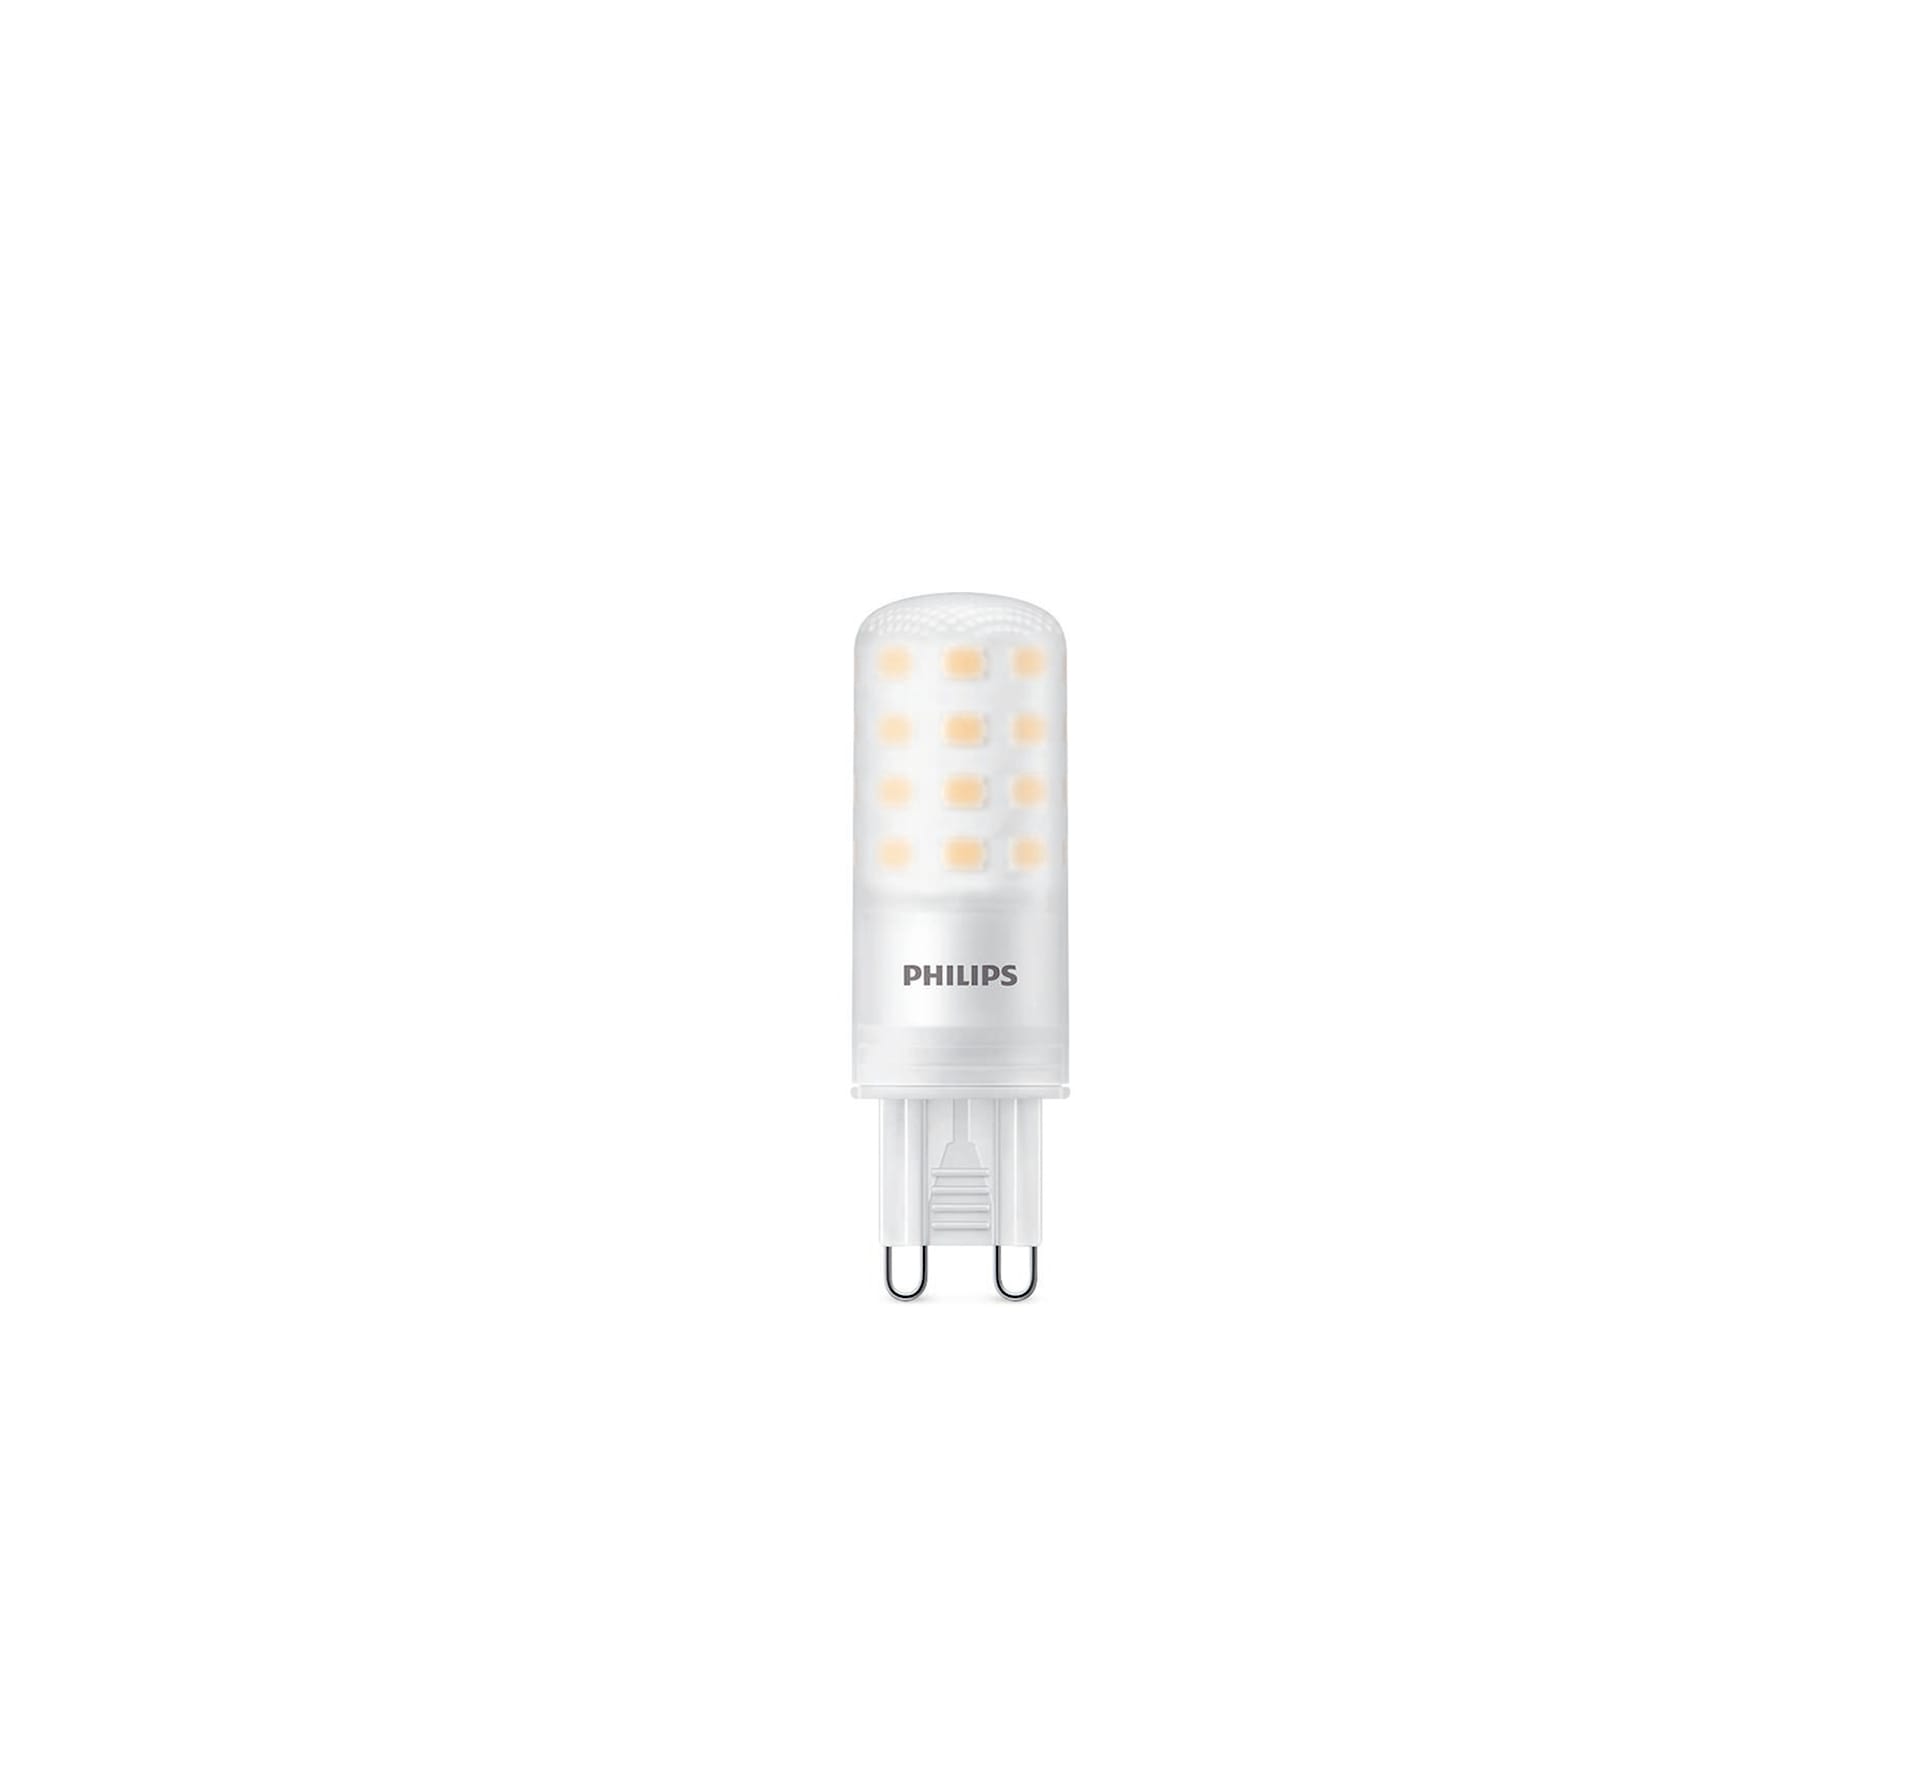 LED Capsule lamp 4W G9 - Philips - NO GA